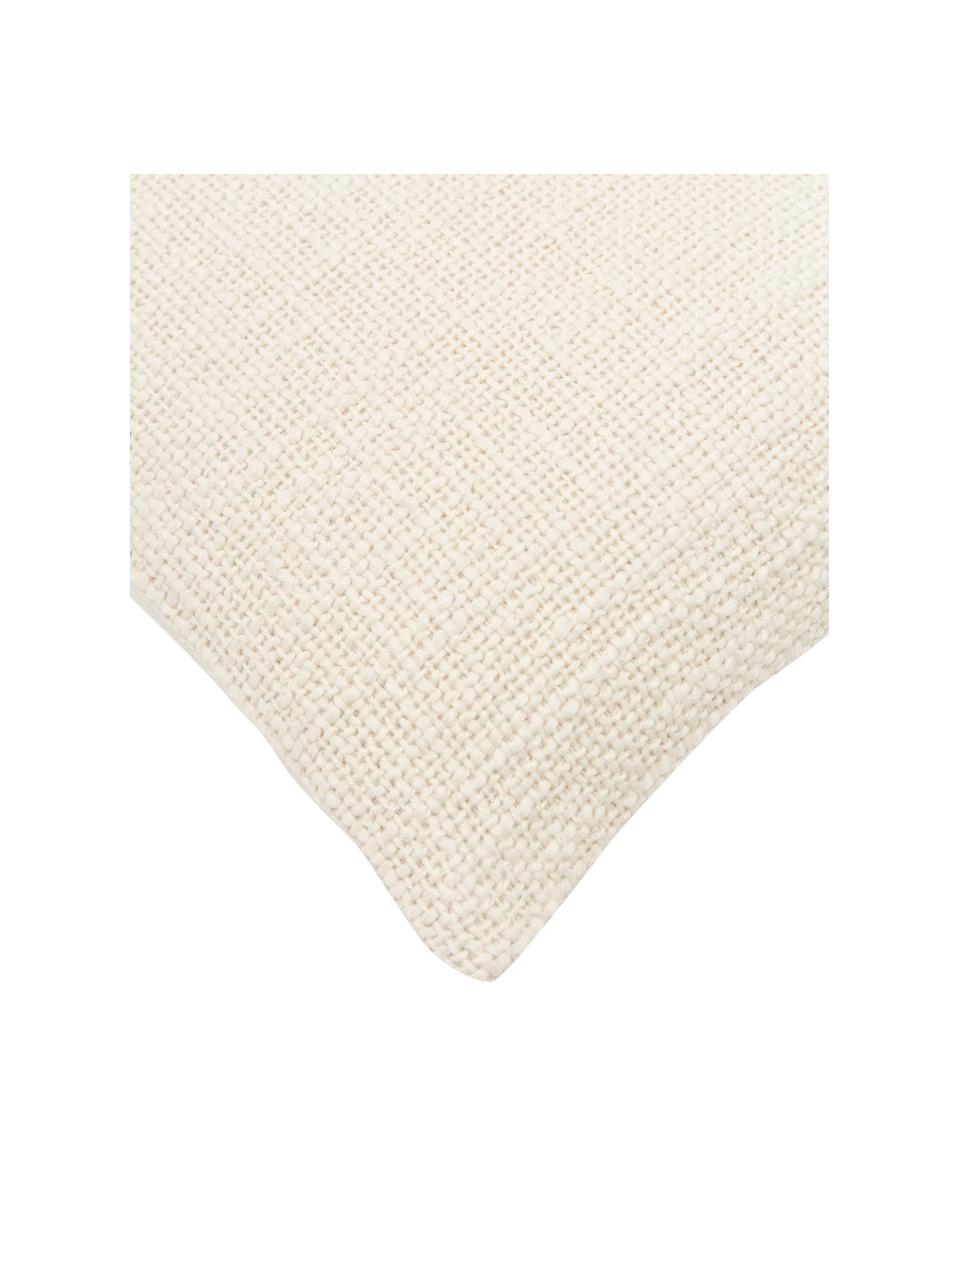 Povlak na polštář Anise, 100 % bavlna, Krémově bílá, Š 30 cm, D 50 cm